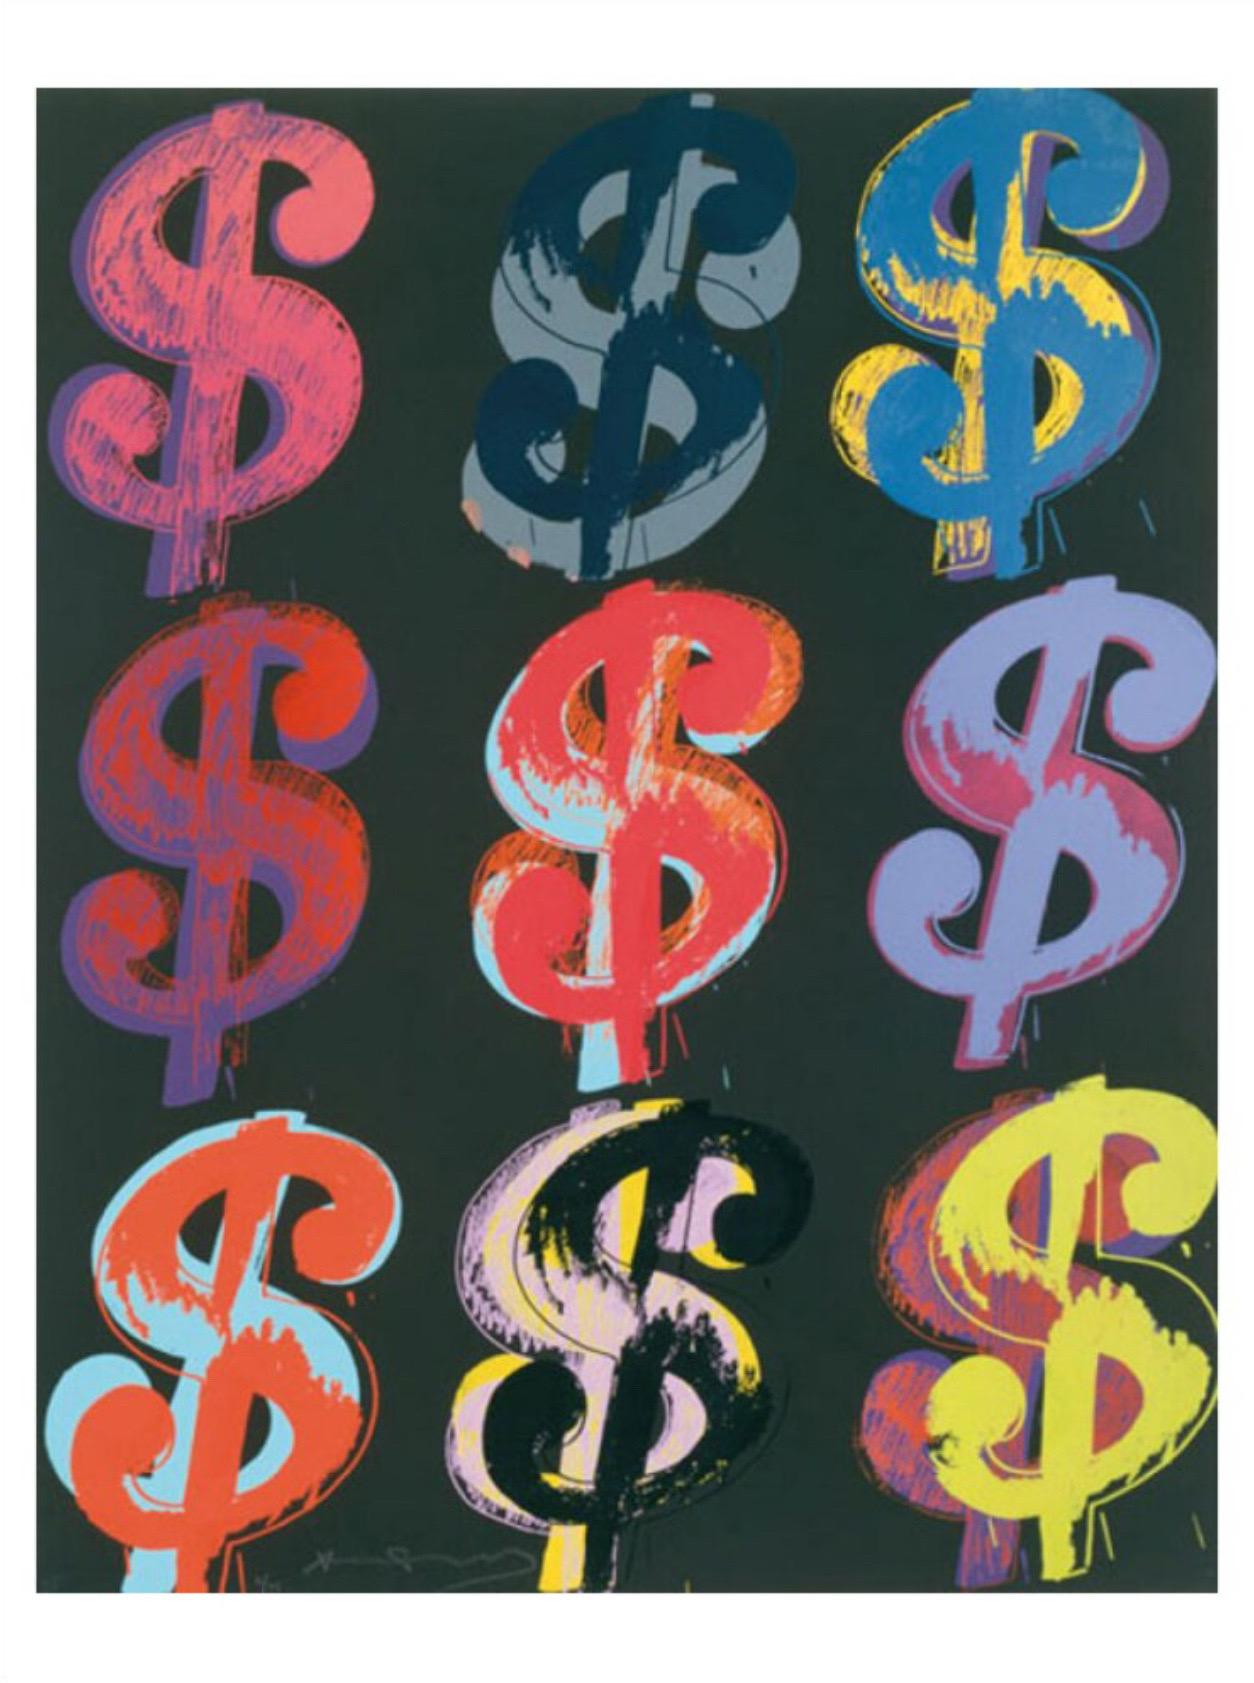 Andy Warhol, $9, 1982 (auf Schwarz)

Mattes 250 g/m² konserviertes Digitalpapier

Bildgröße 56 x 71 cm (22,04 x 27,95 Zoll) 

Papierformat 60 x 80 cm (23,62 x 31,49 Zoll) 


Geld wurde schon früh in den 1960er Jahren zu einem wichtigen Thema für